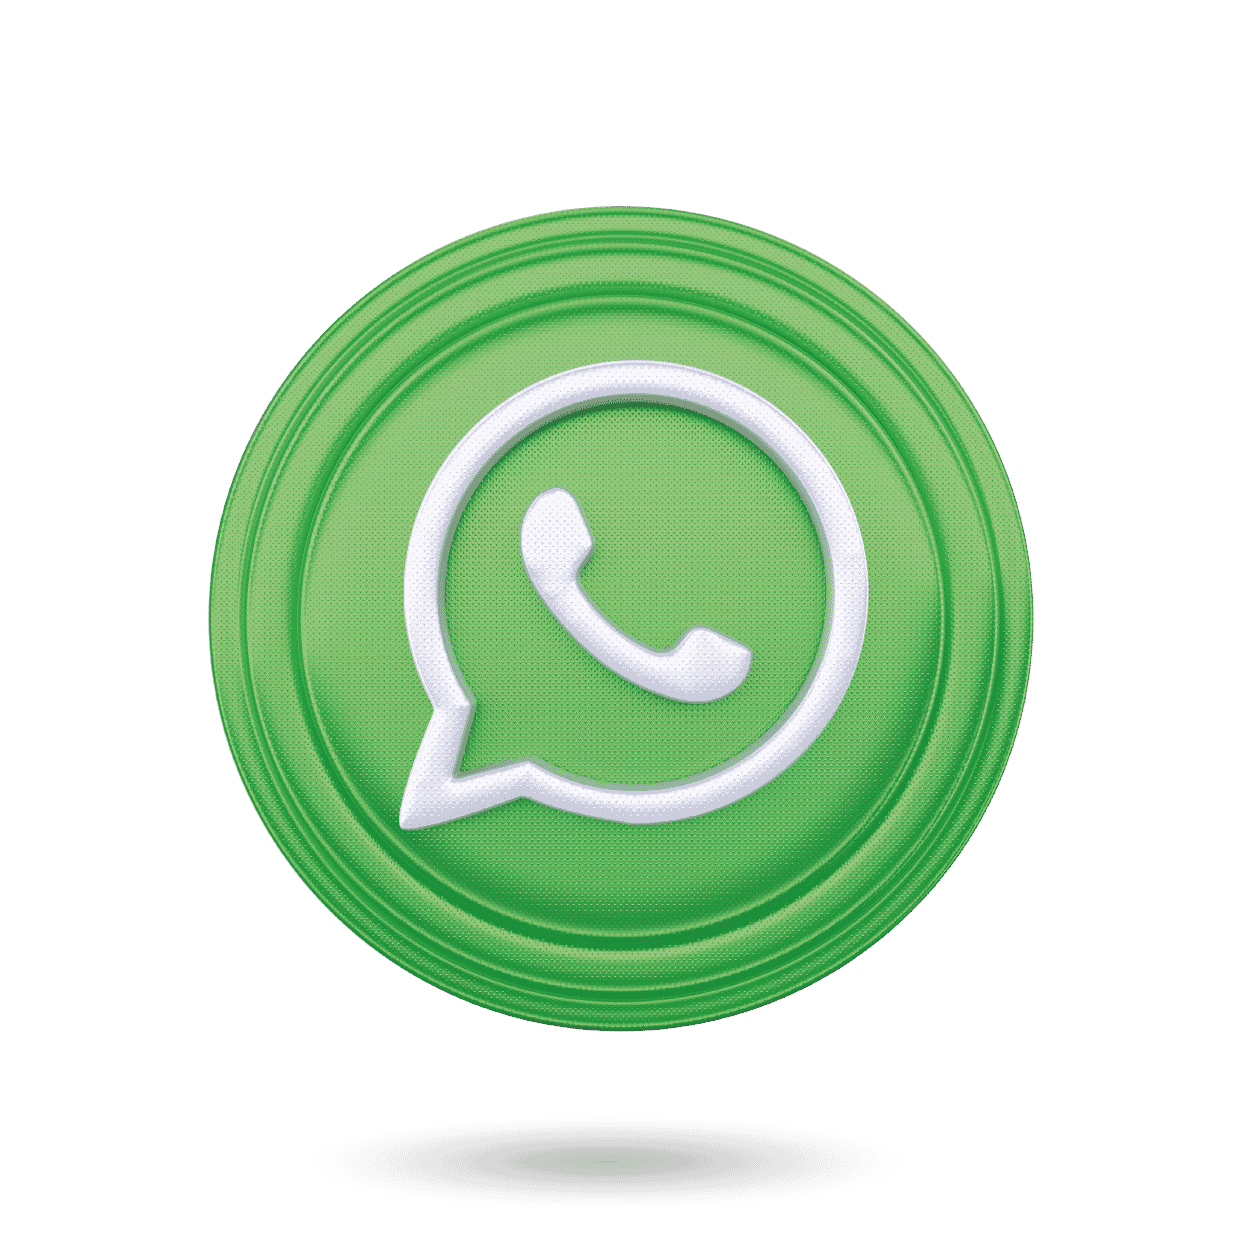 Iconos Whatsapp